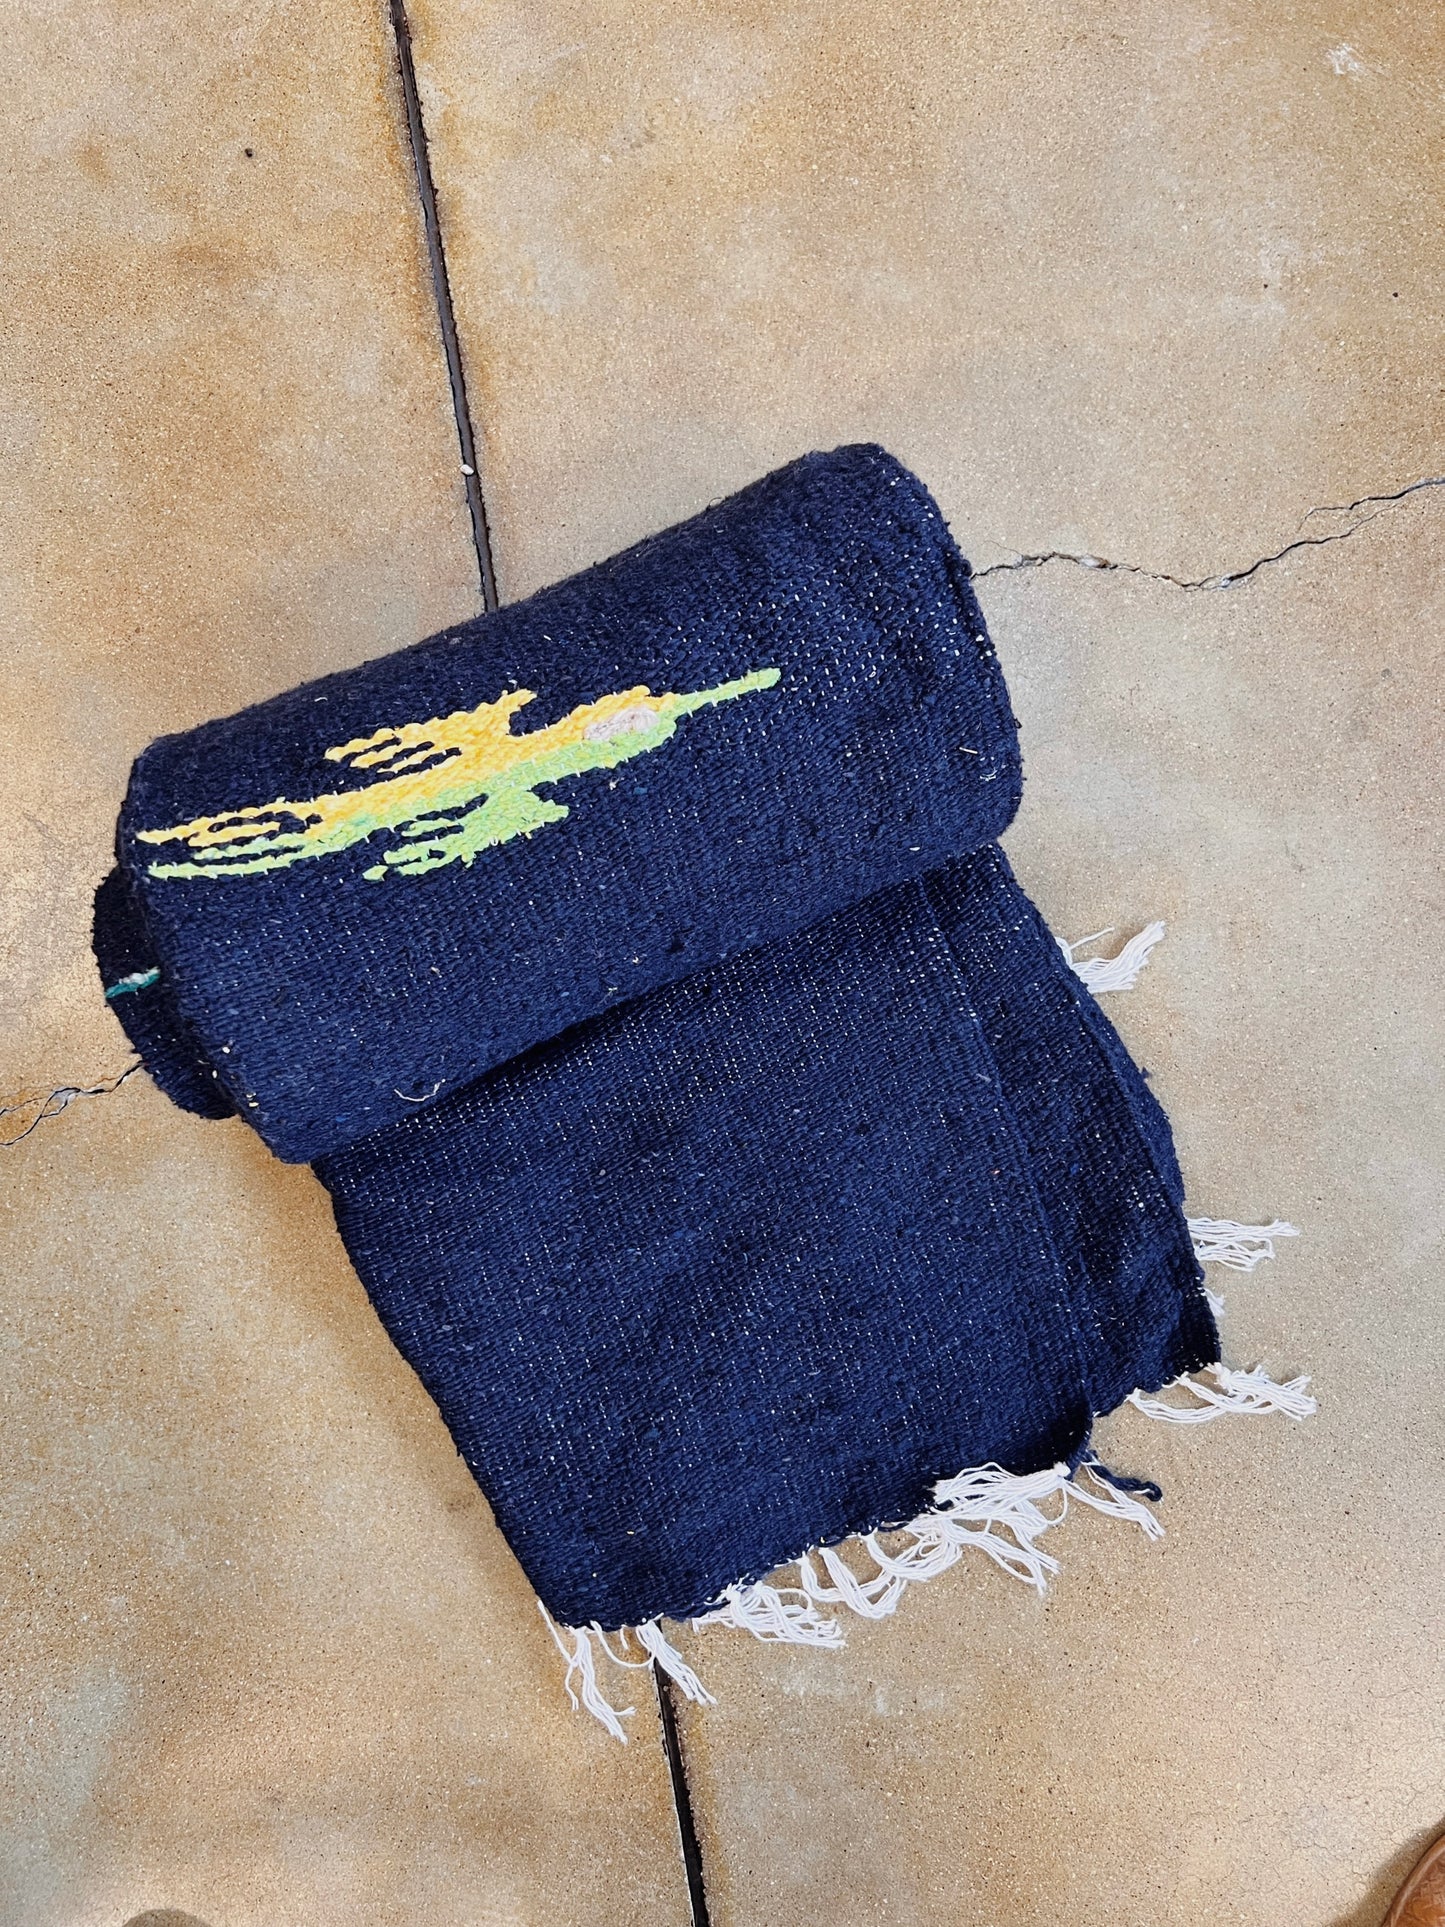 Woven Thunderbird Blanket